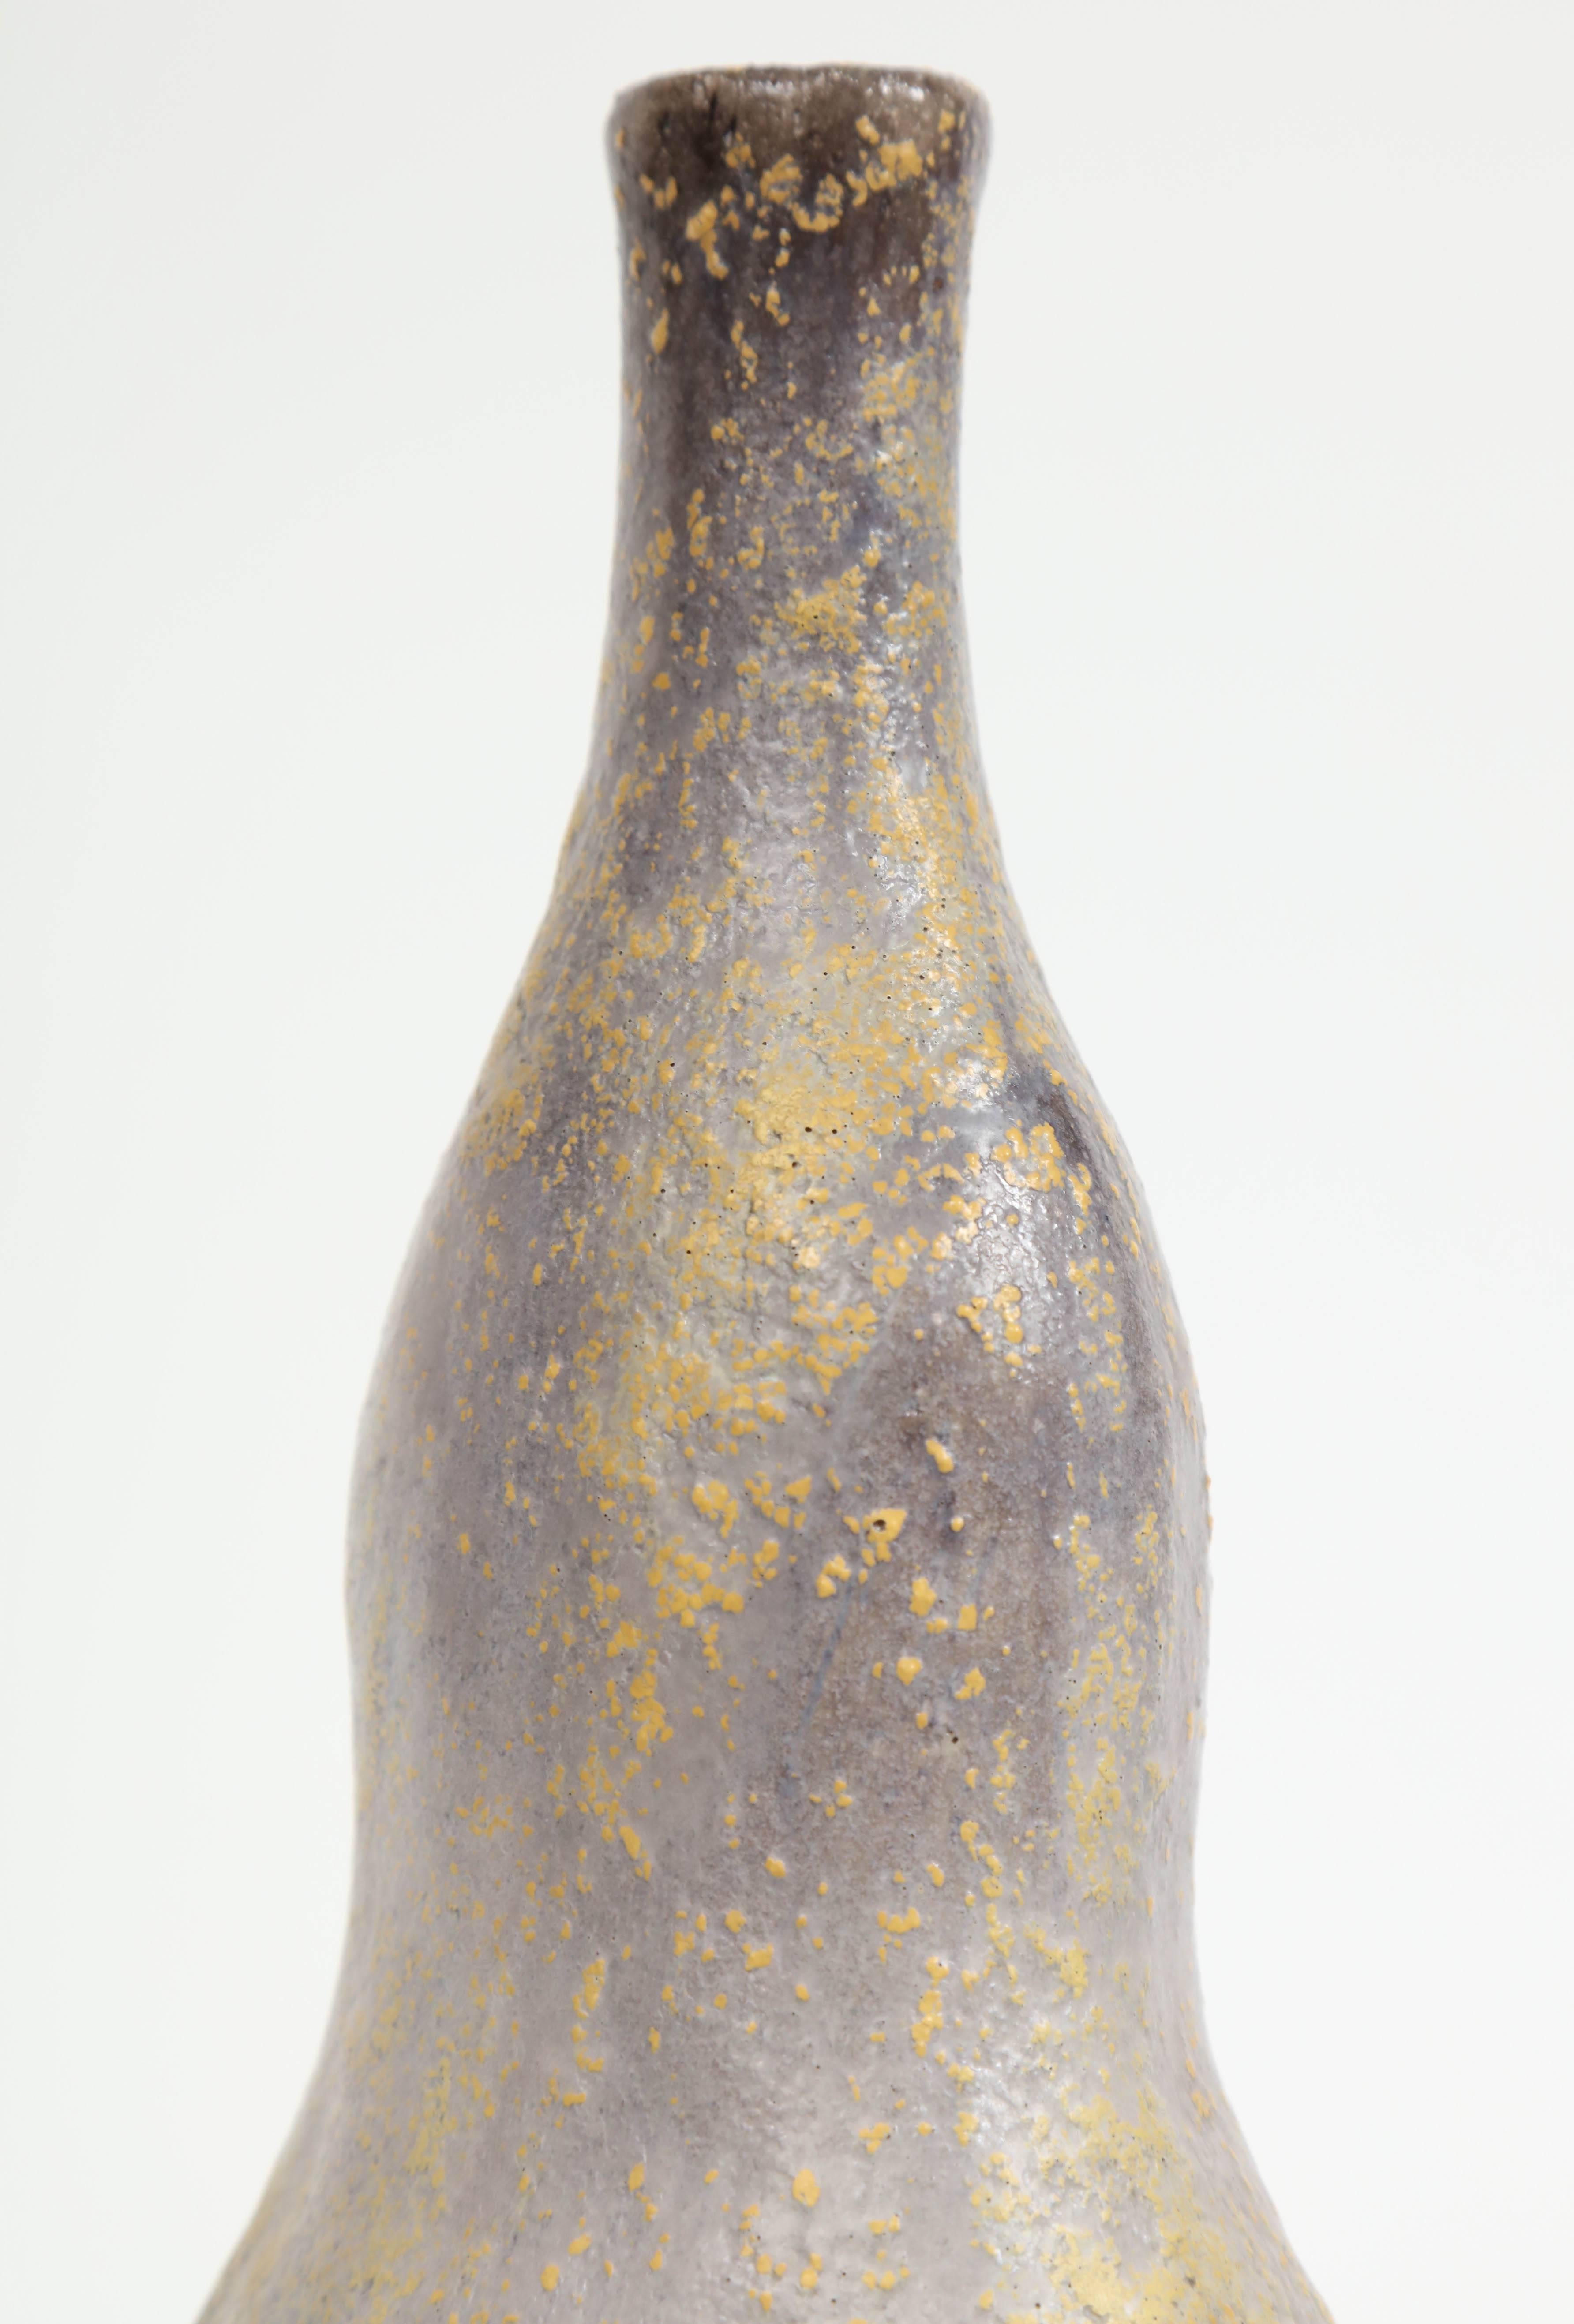 Marcello Fantoni Keramik-Flaschenvase, glasiertes Steingut, ca. 1970er Jahre (20. Jahrhundert) im Angebot